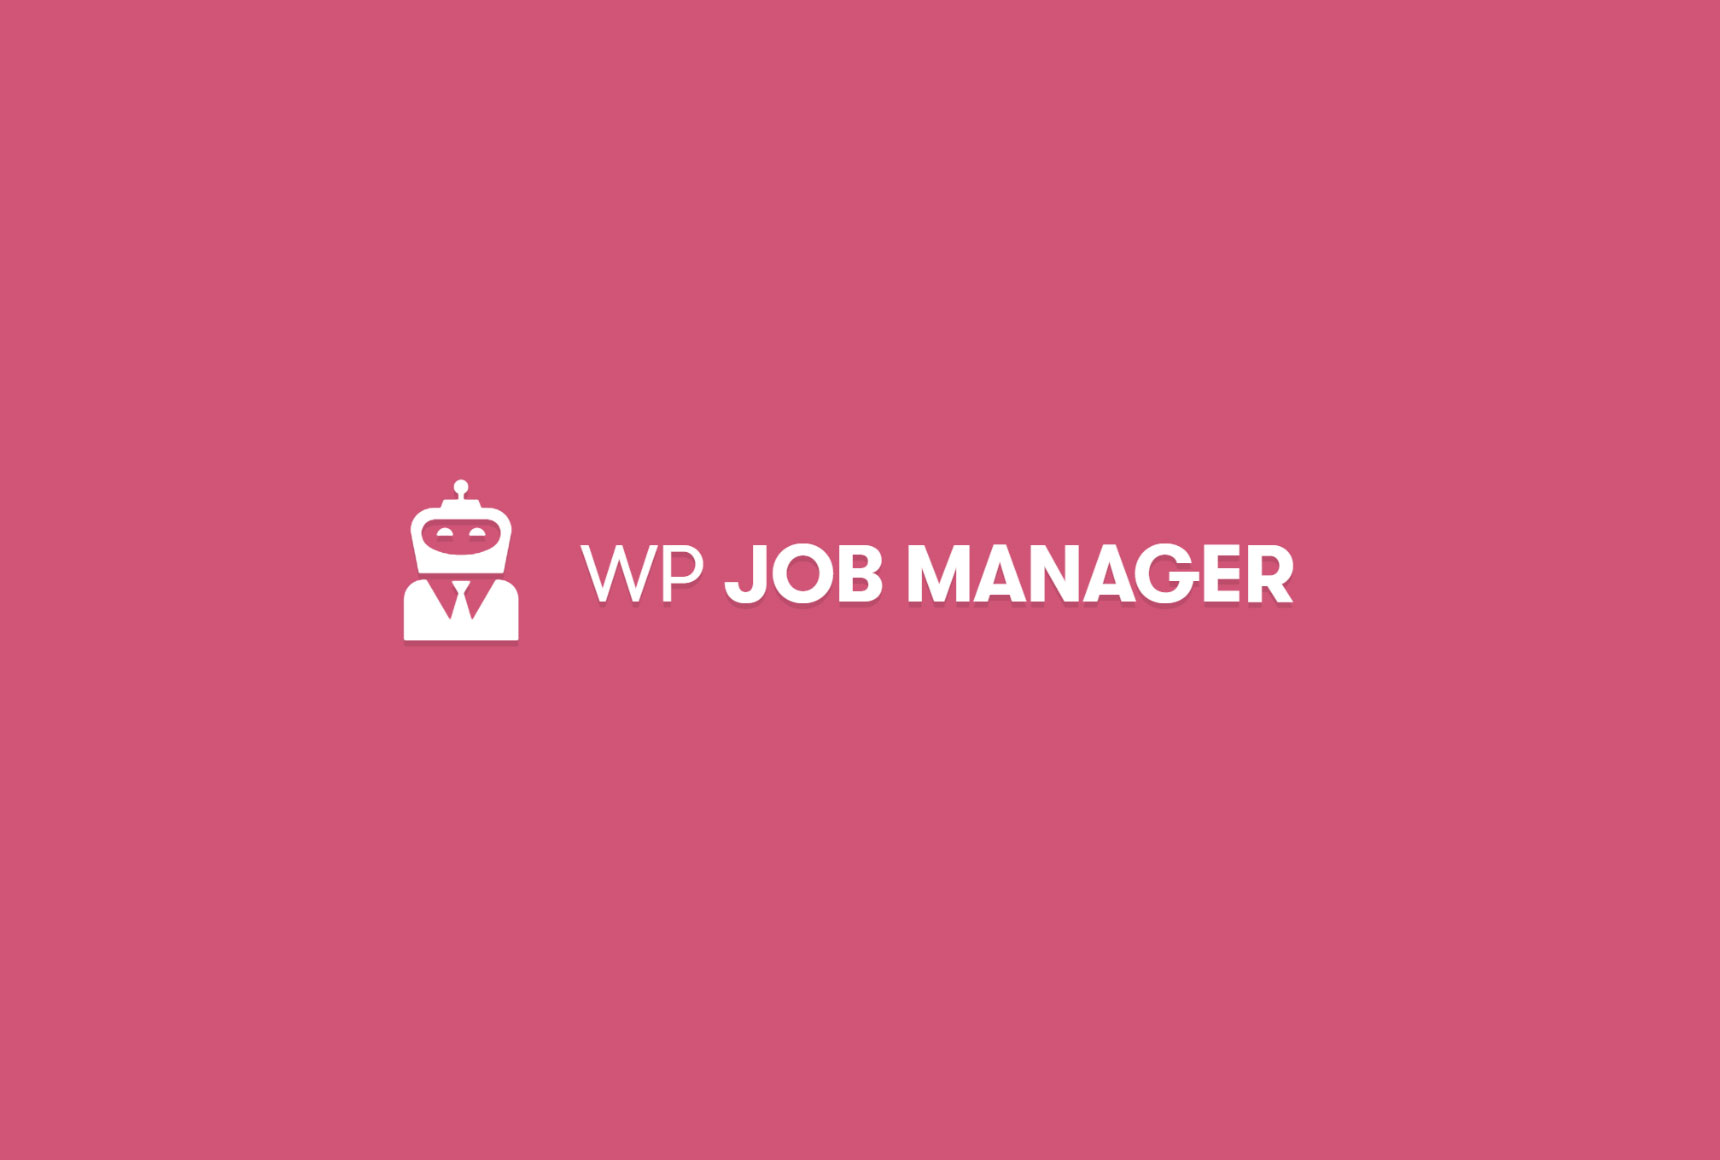 WP Job Manager masthead image